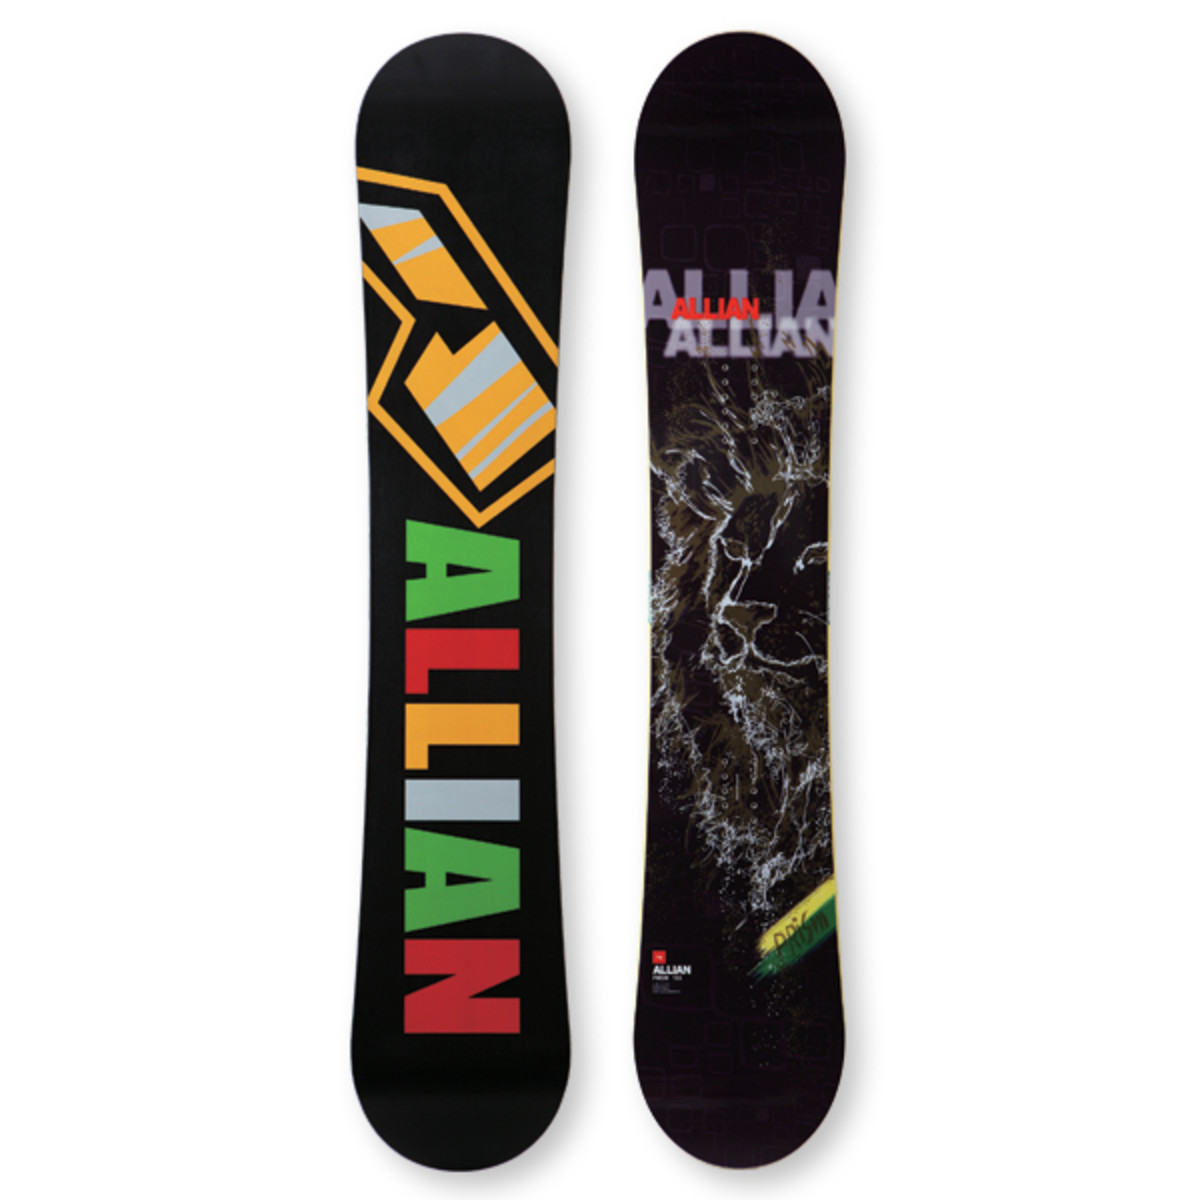 Allian Prism Snowboard - Snowboarder